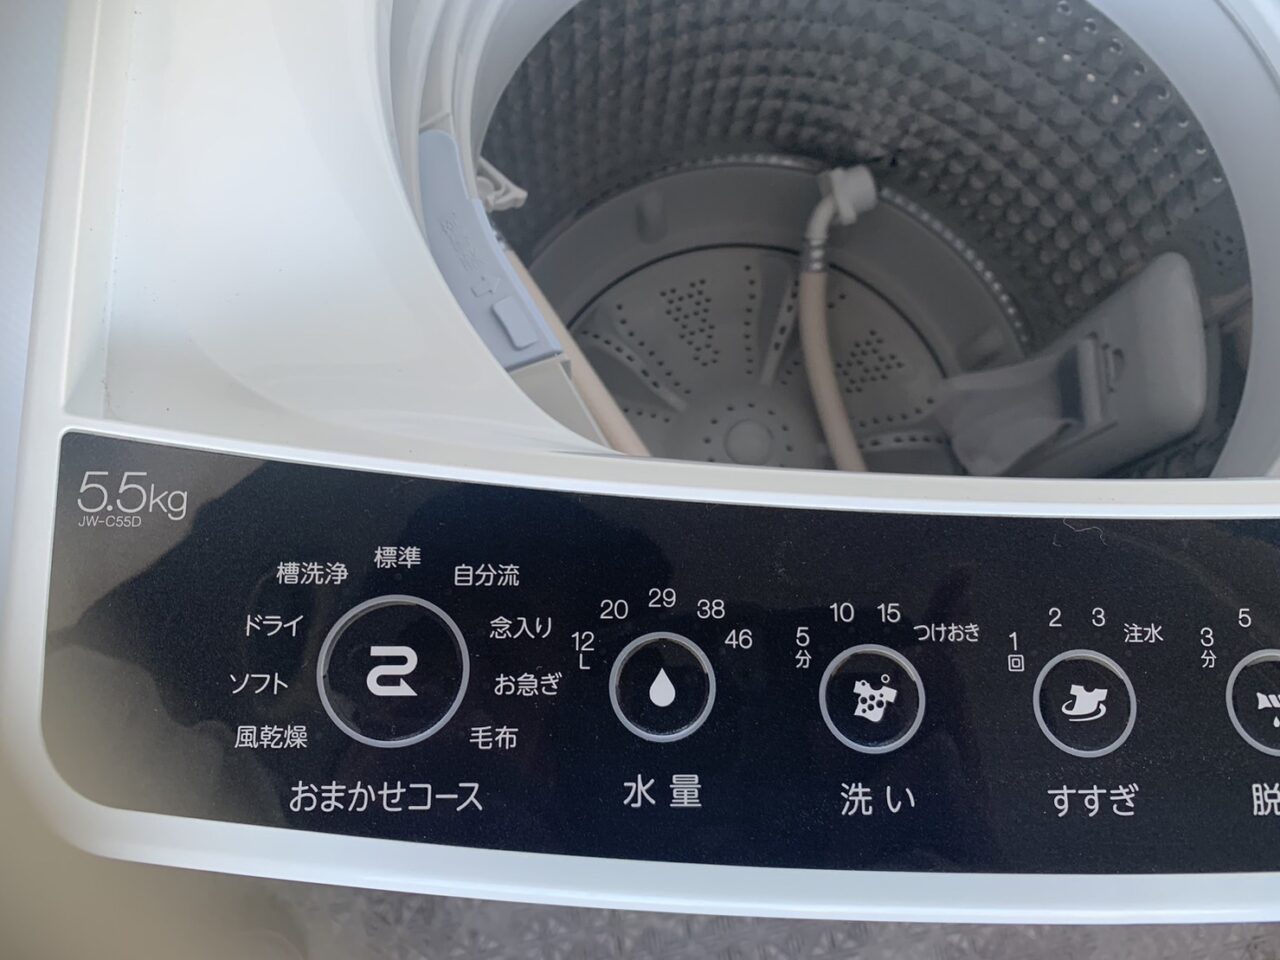 Haier洗濯機2021年製 | 何でも屋本舗株式会社